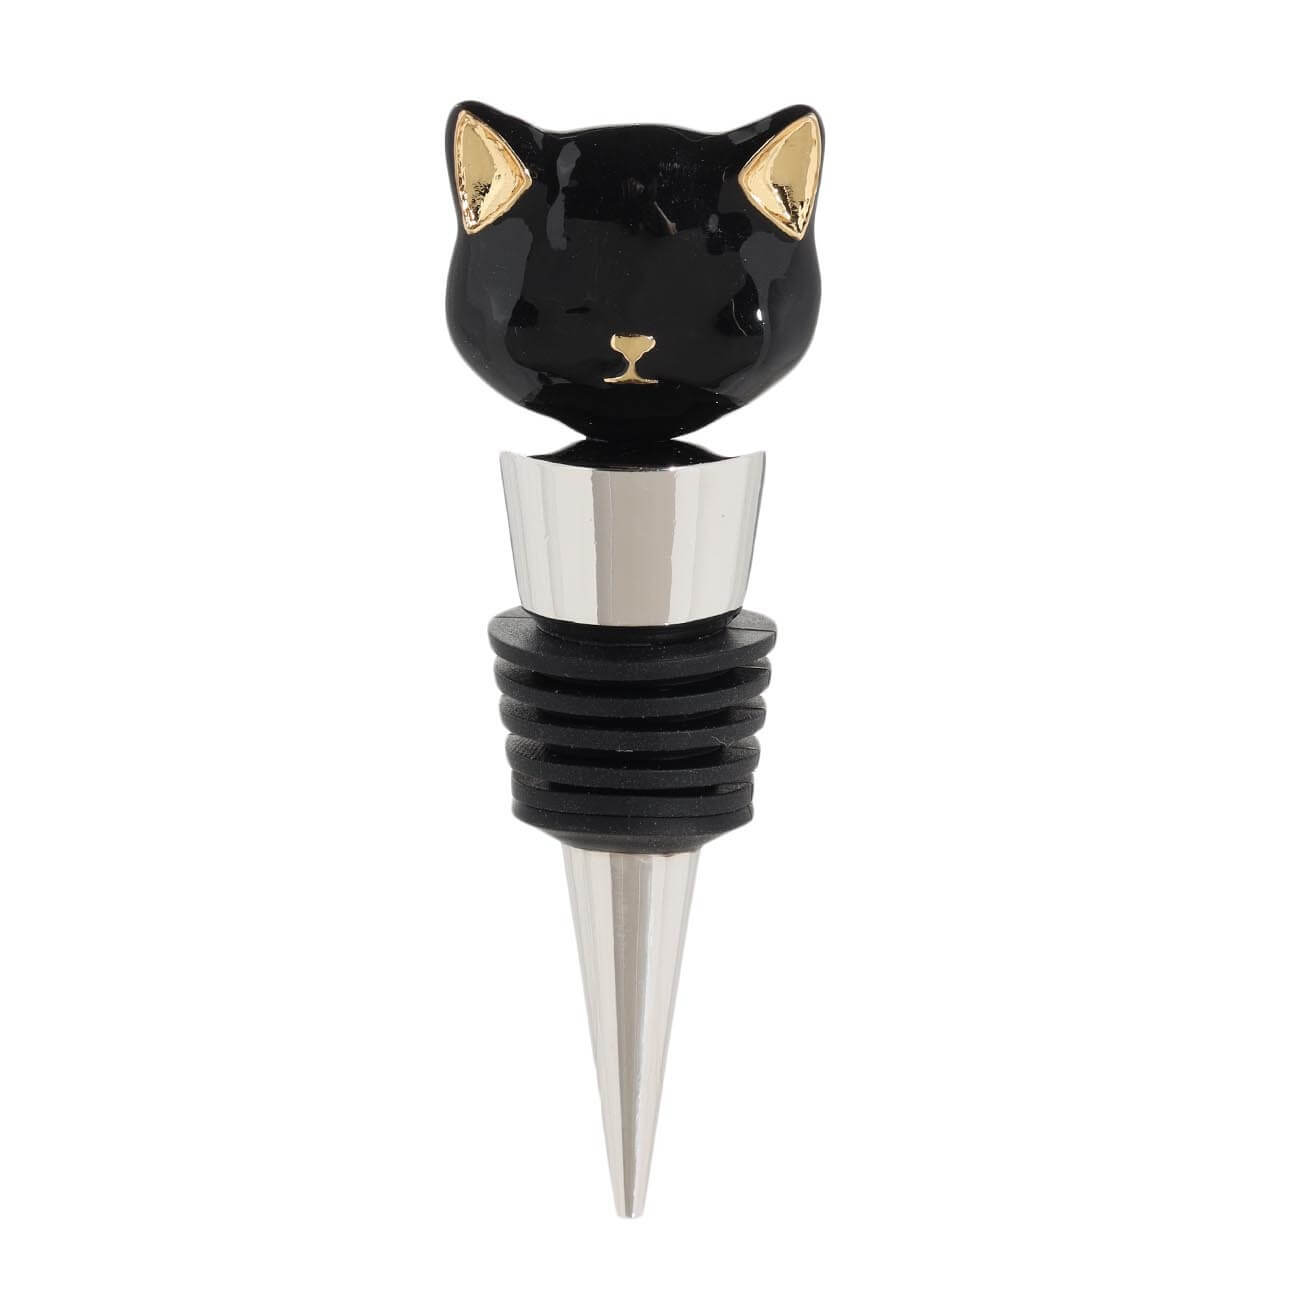 пробка для винной бутылки 10 см металл стекло черная кот cat night Пробка для винной бутылки, 10 см, металл/стекло, черная, Кот, Cat night